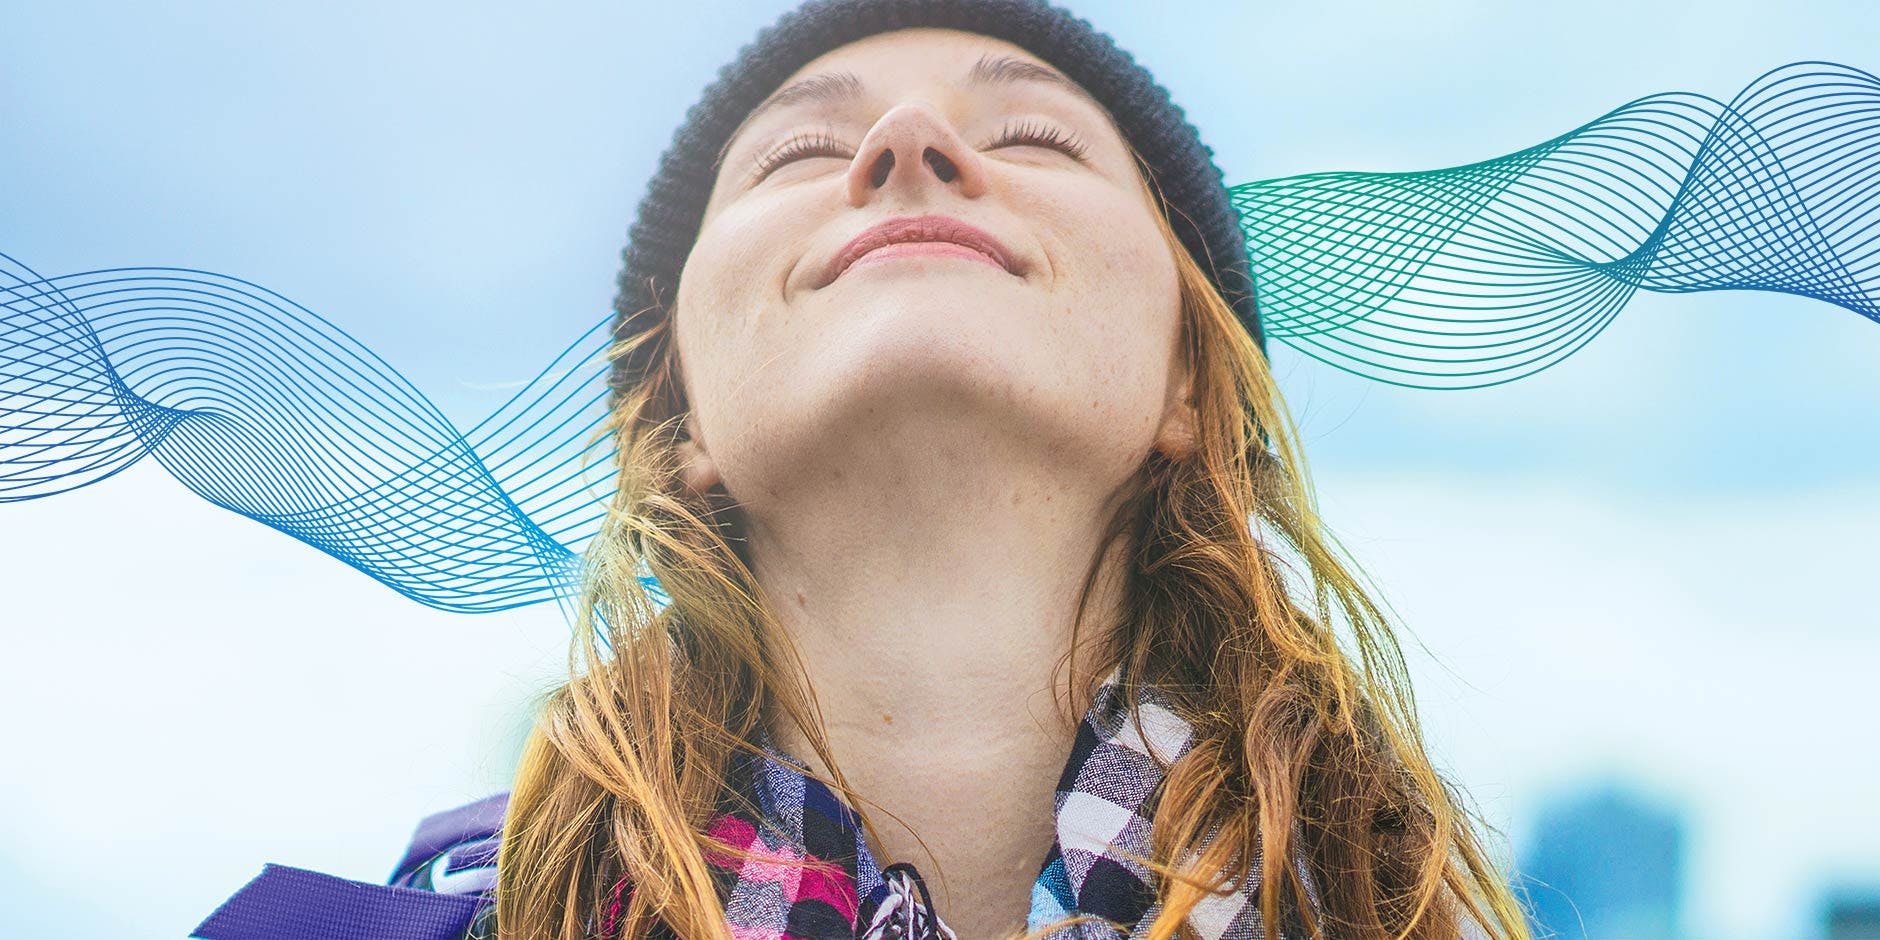 Nasenatmung: Frau mit Mütze und kariertem Schal atmet mit erhobenem Kopf frische Luft ein